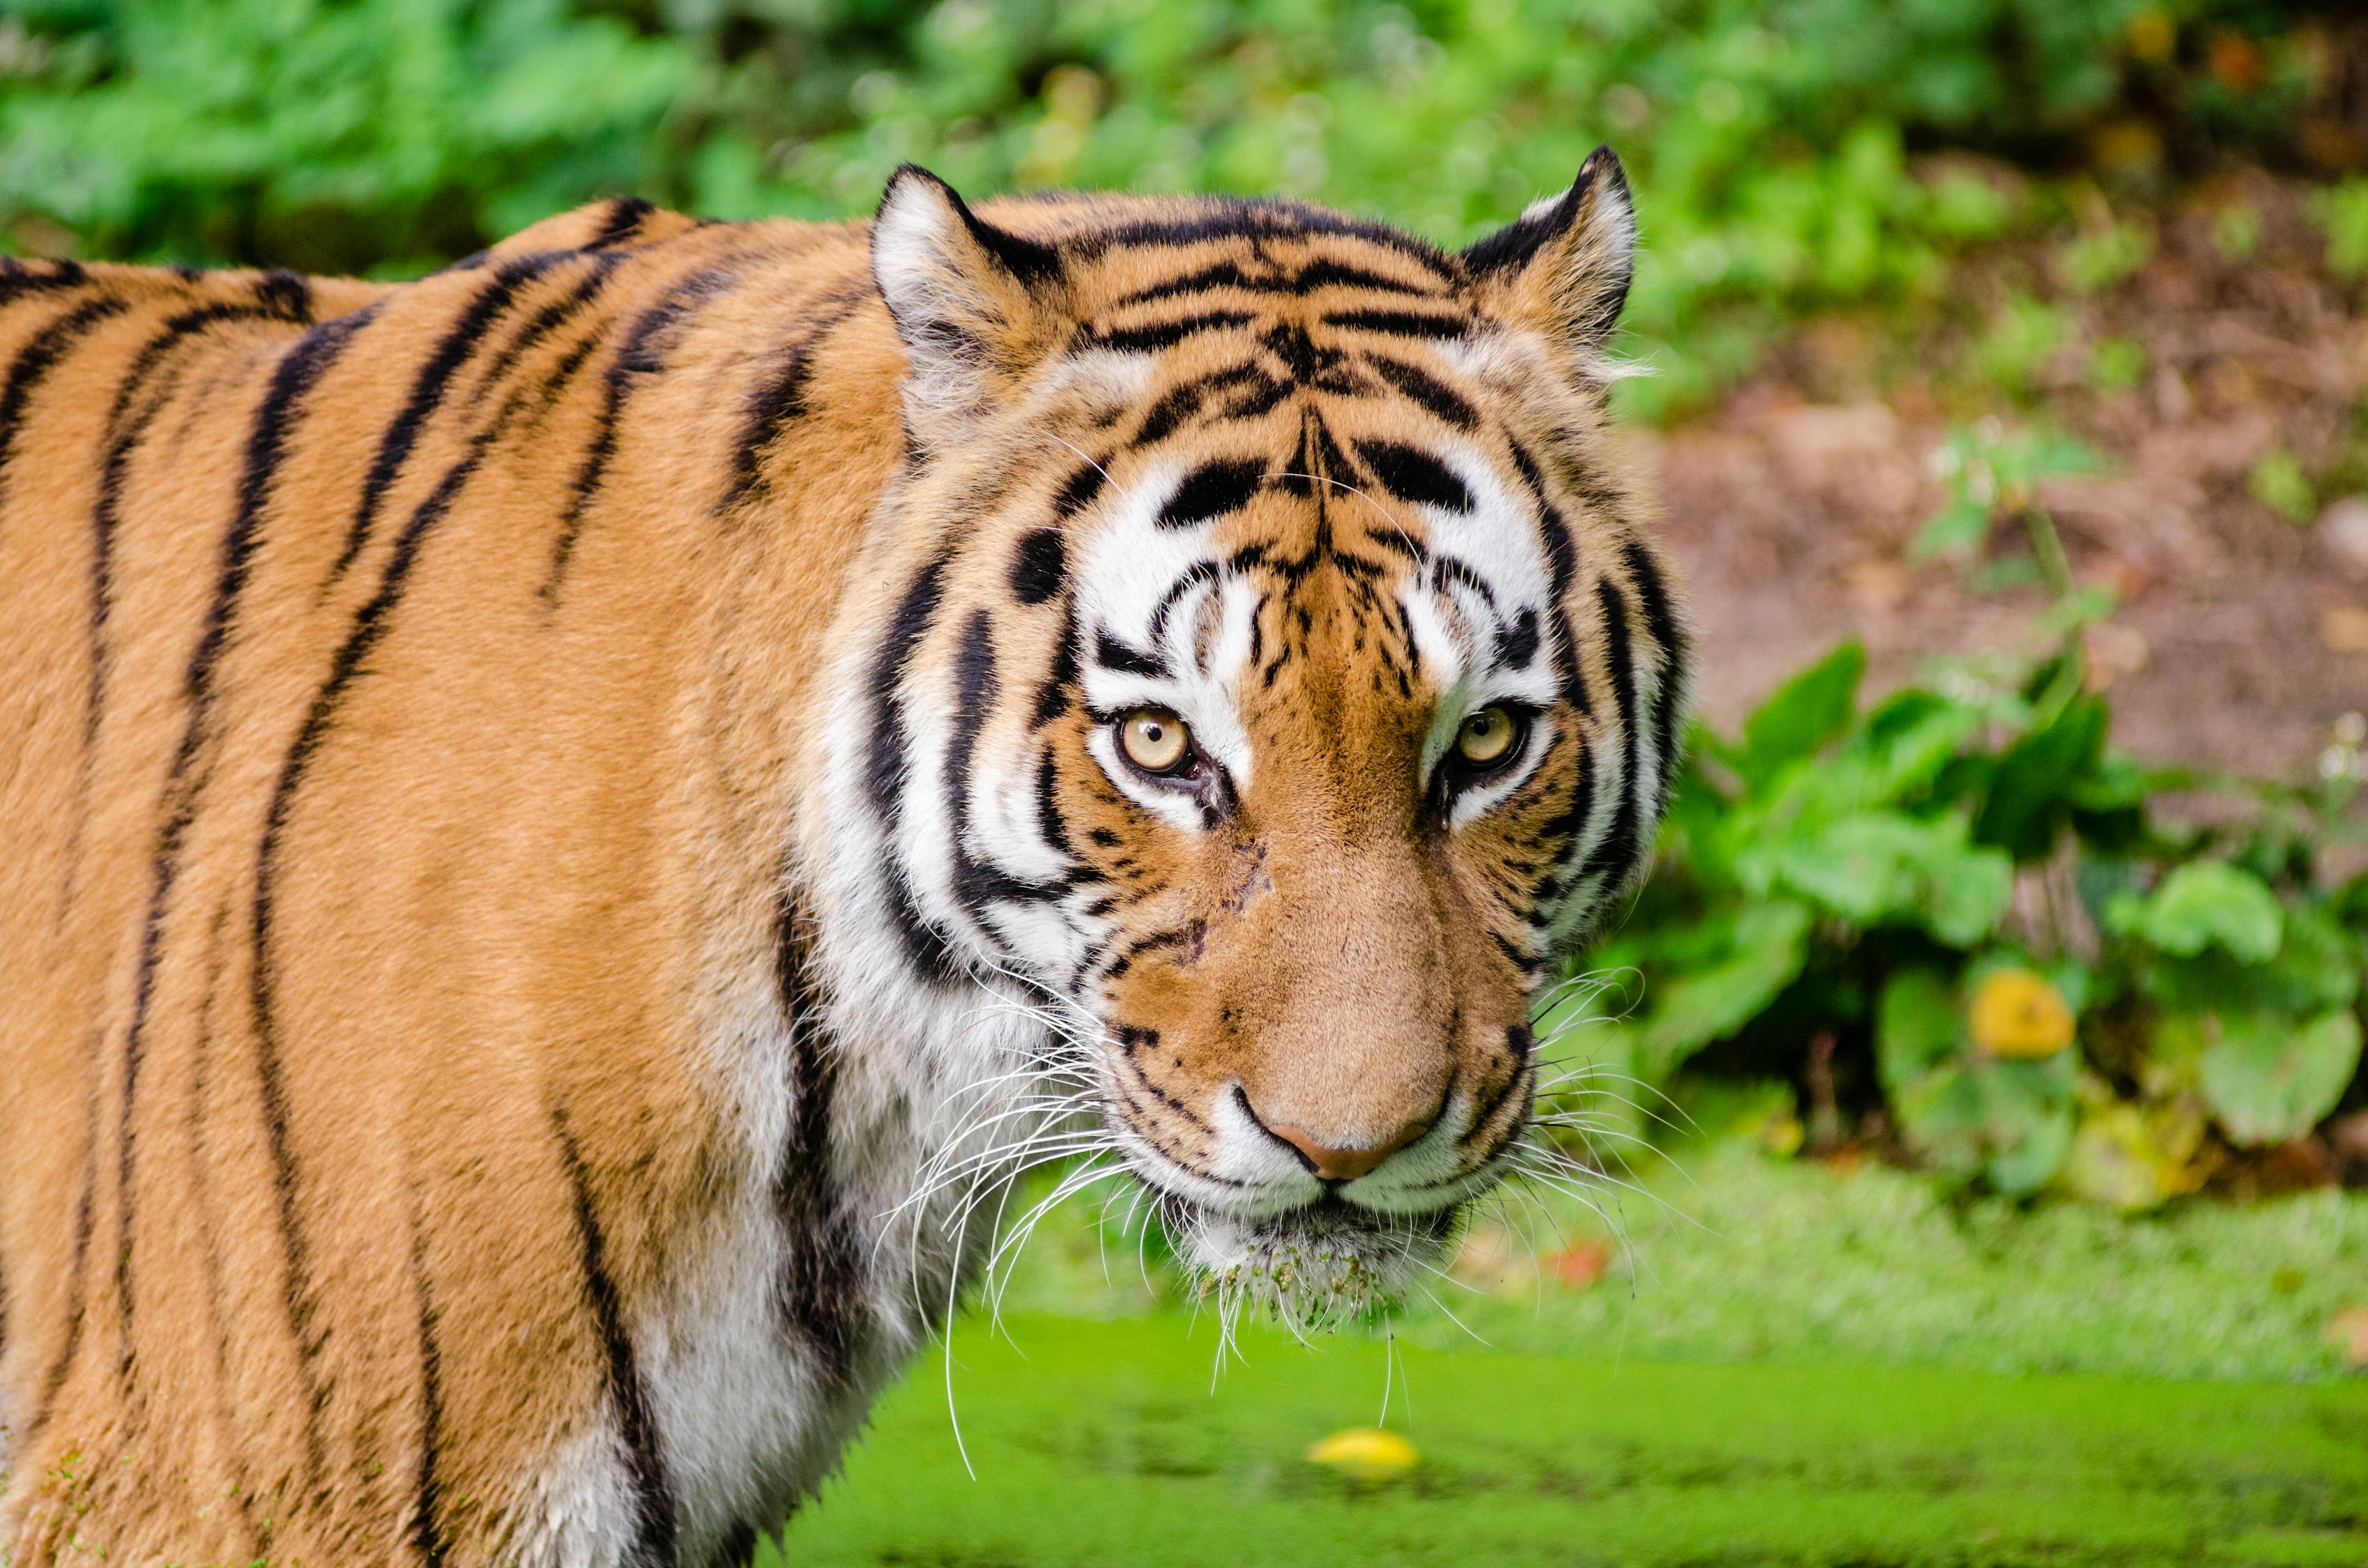 Tiger Looking at Camera · Free Stock Photo